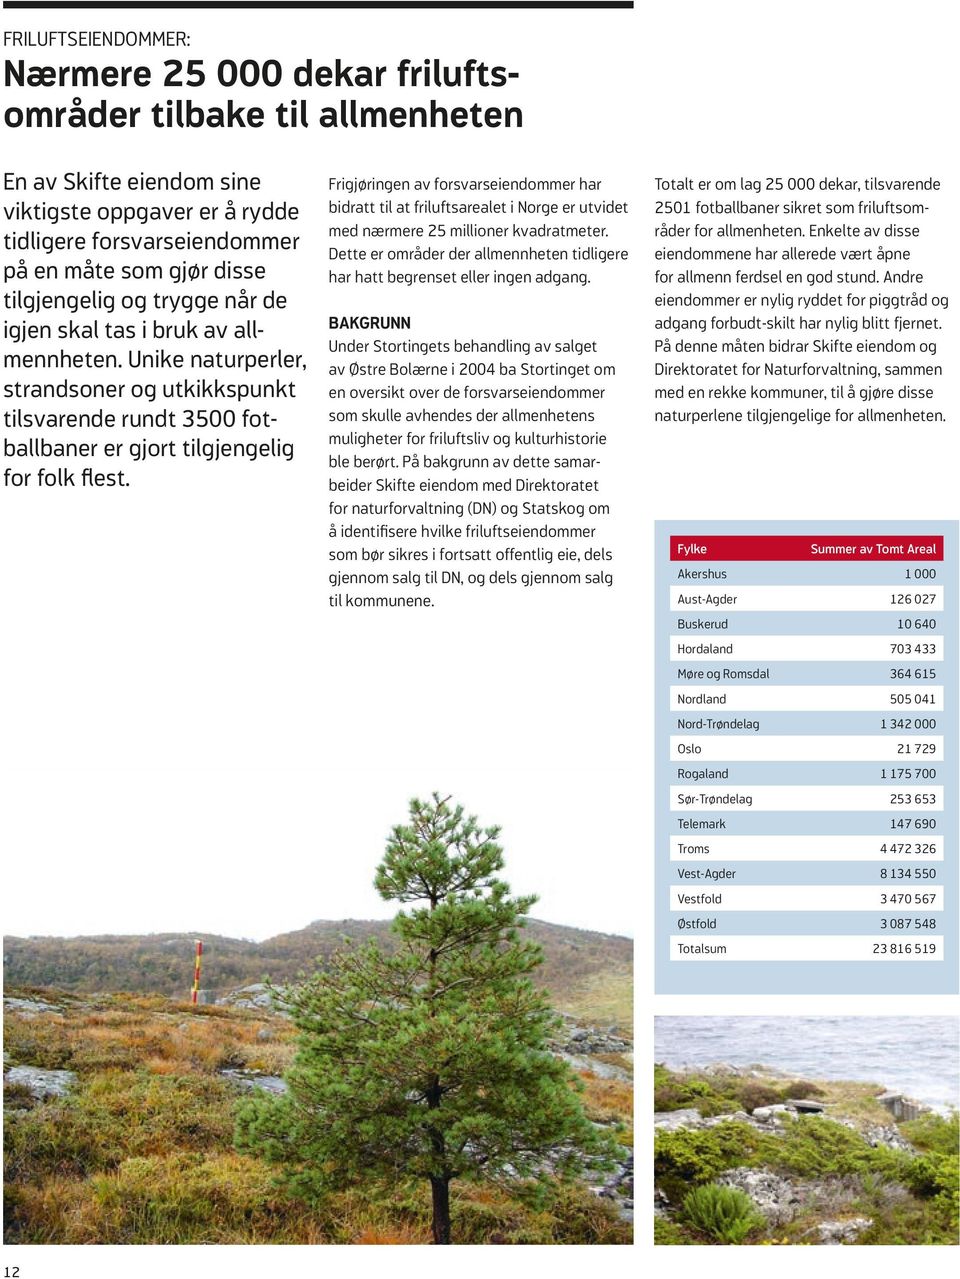 Frigjøringen av forsvarseiendommer har bidratt til at friluftsarealet i Norge er utvidet med nærmere 25 millioner kvadratmeter.